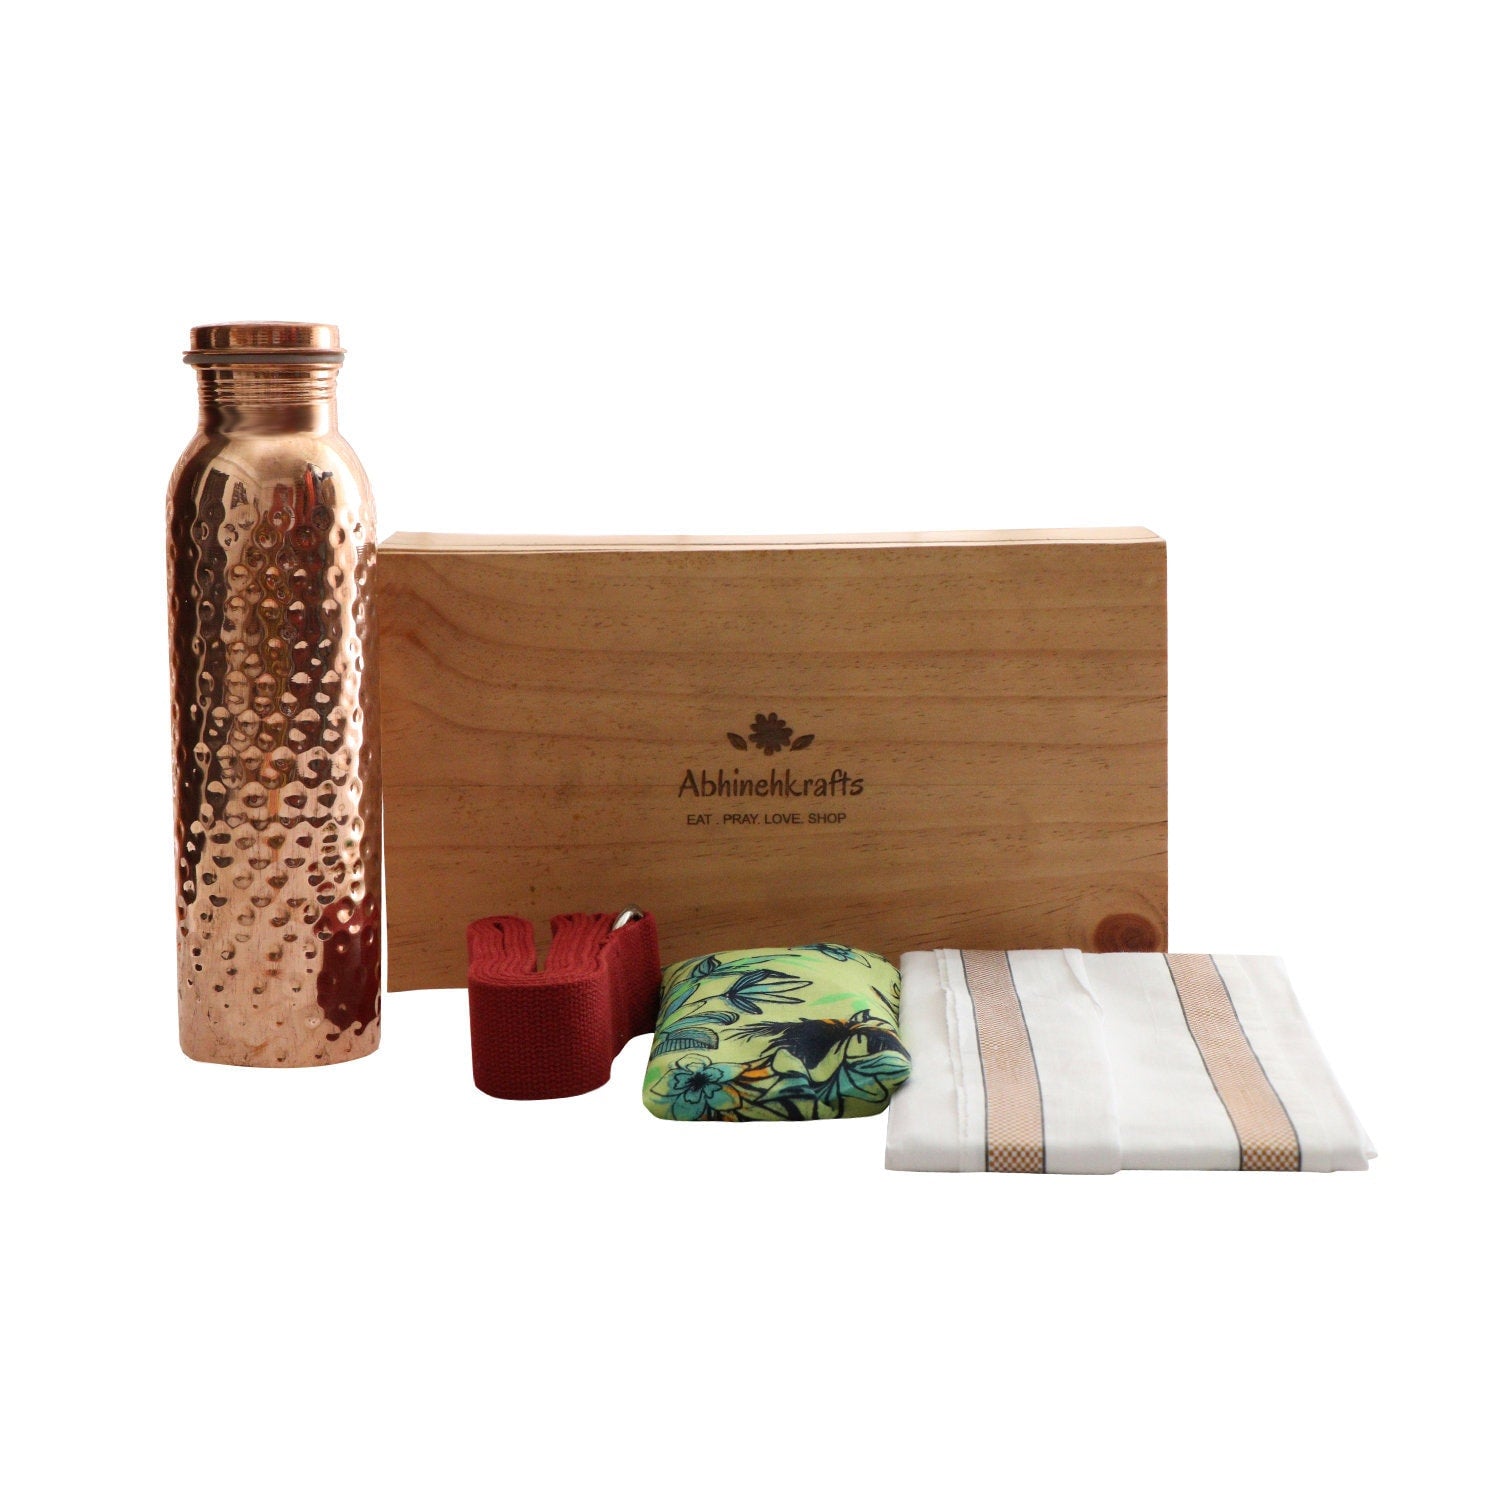 Gift Box for a Yogi/Yogini/ Yoga Lover & Yoga Enthusiast - Made in India